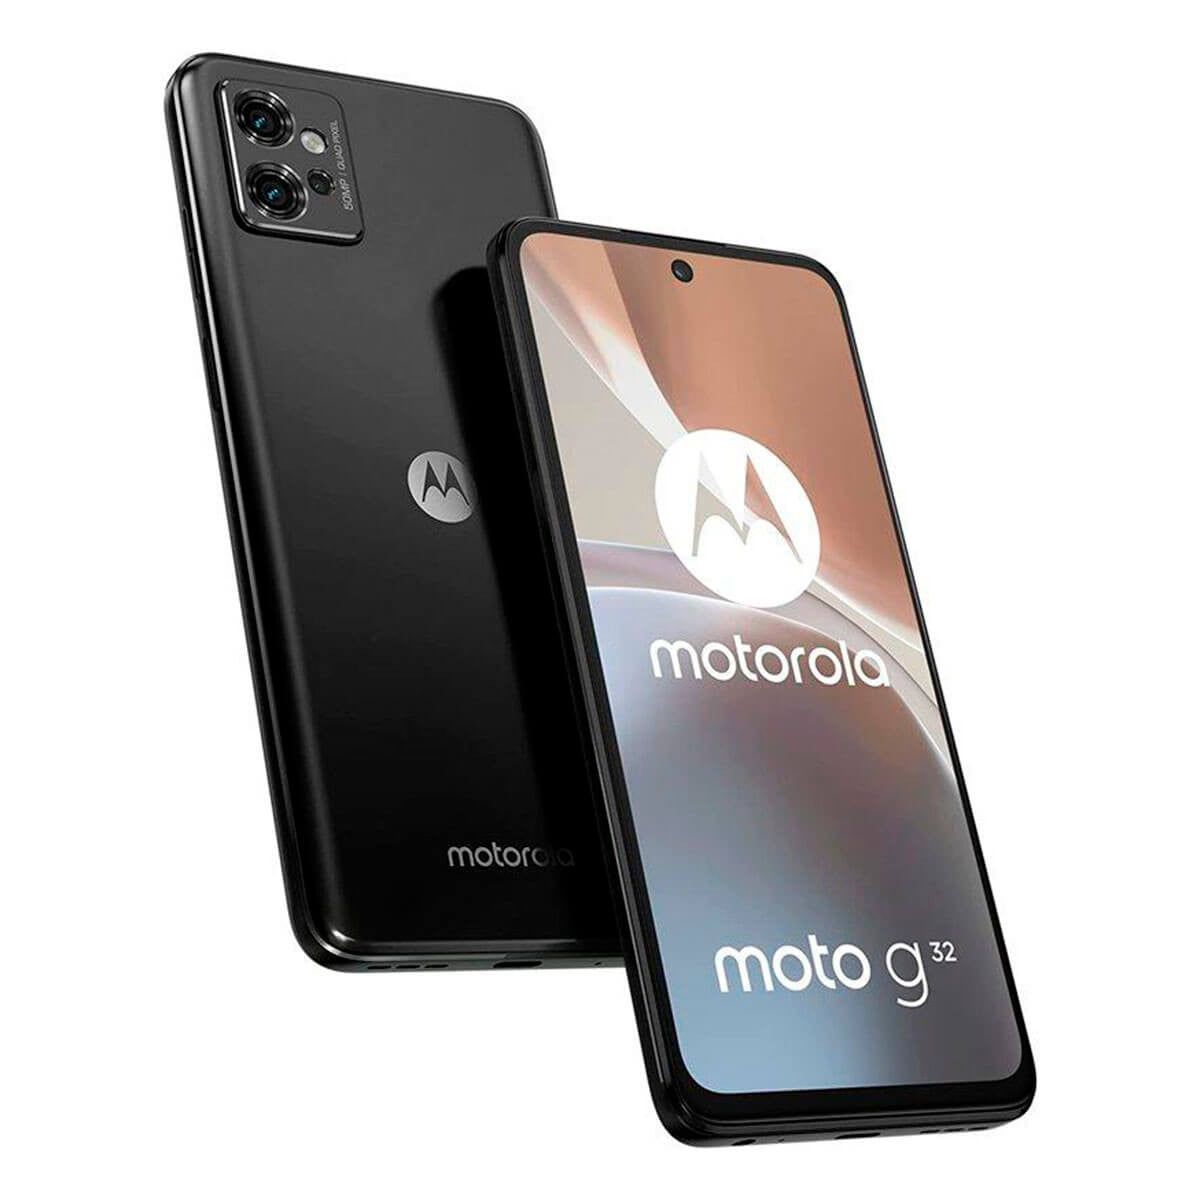 Motorola MOTO G32 6GB/128GB Gris Mineral (Mineral Grey) Dual SIM XT2235-2 Smartphone | Motorola